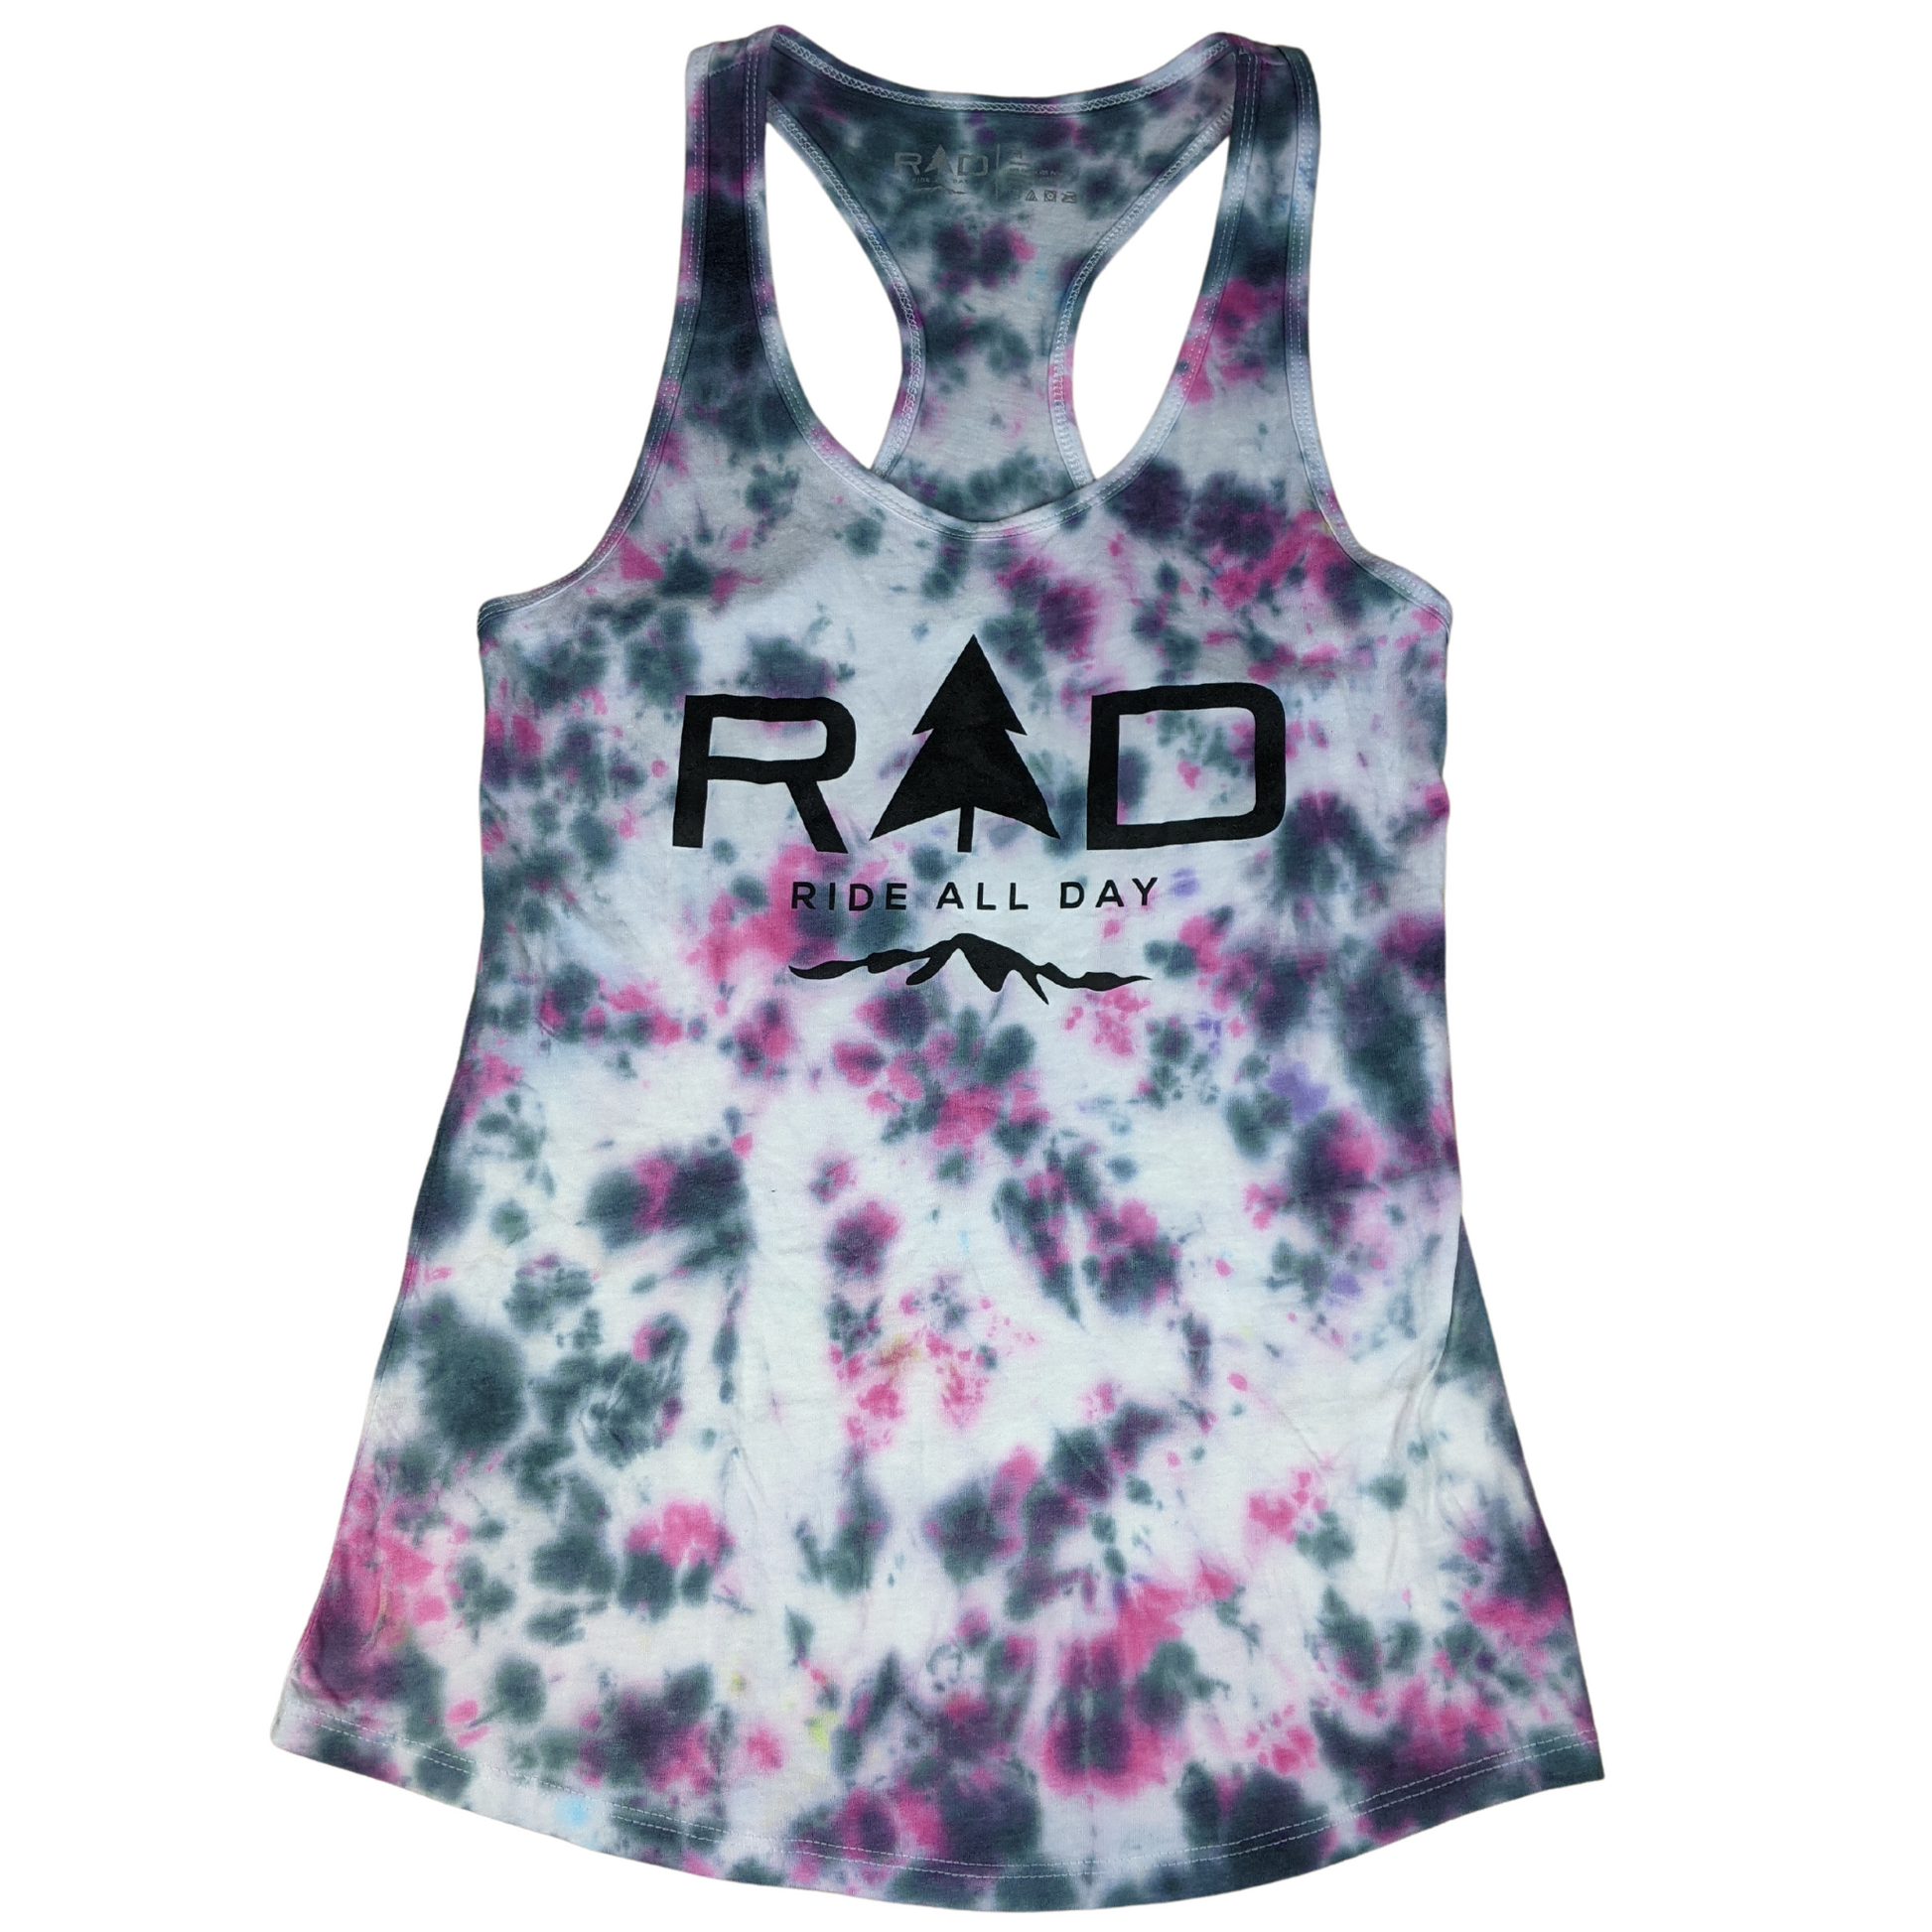 RAD Ladies racerback tank top in confetti tie dye pattern